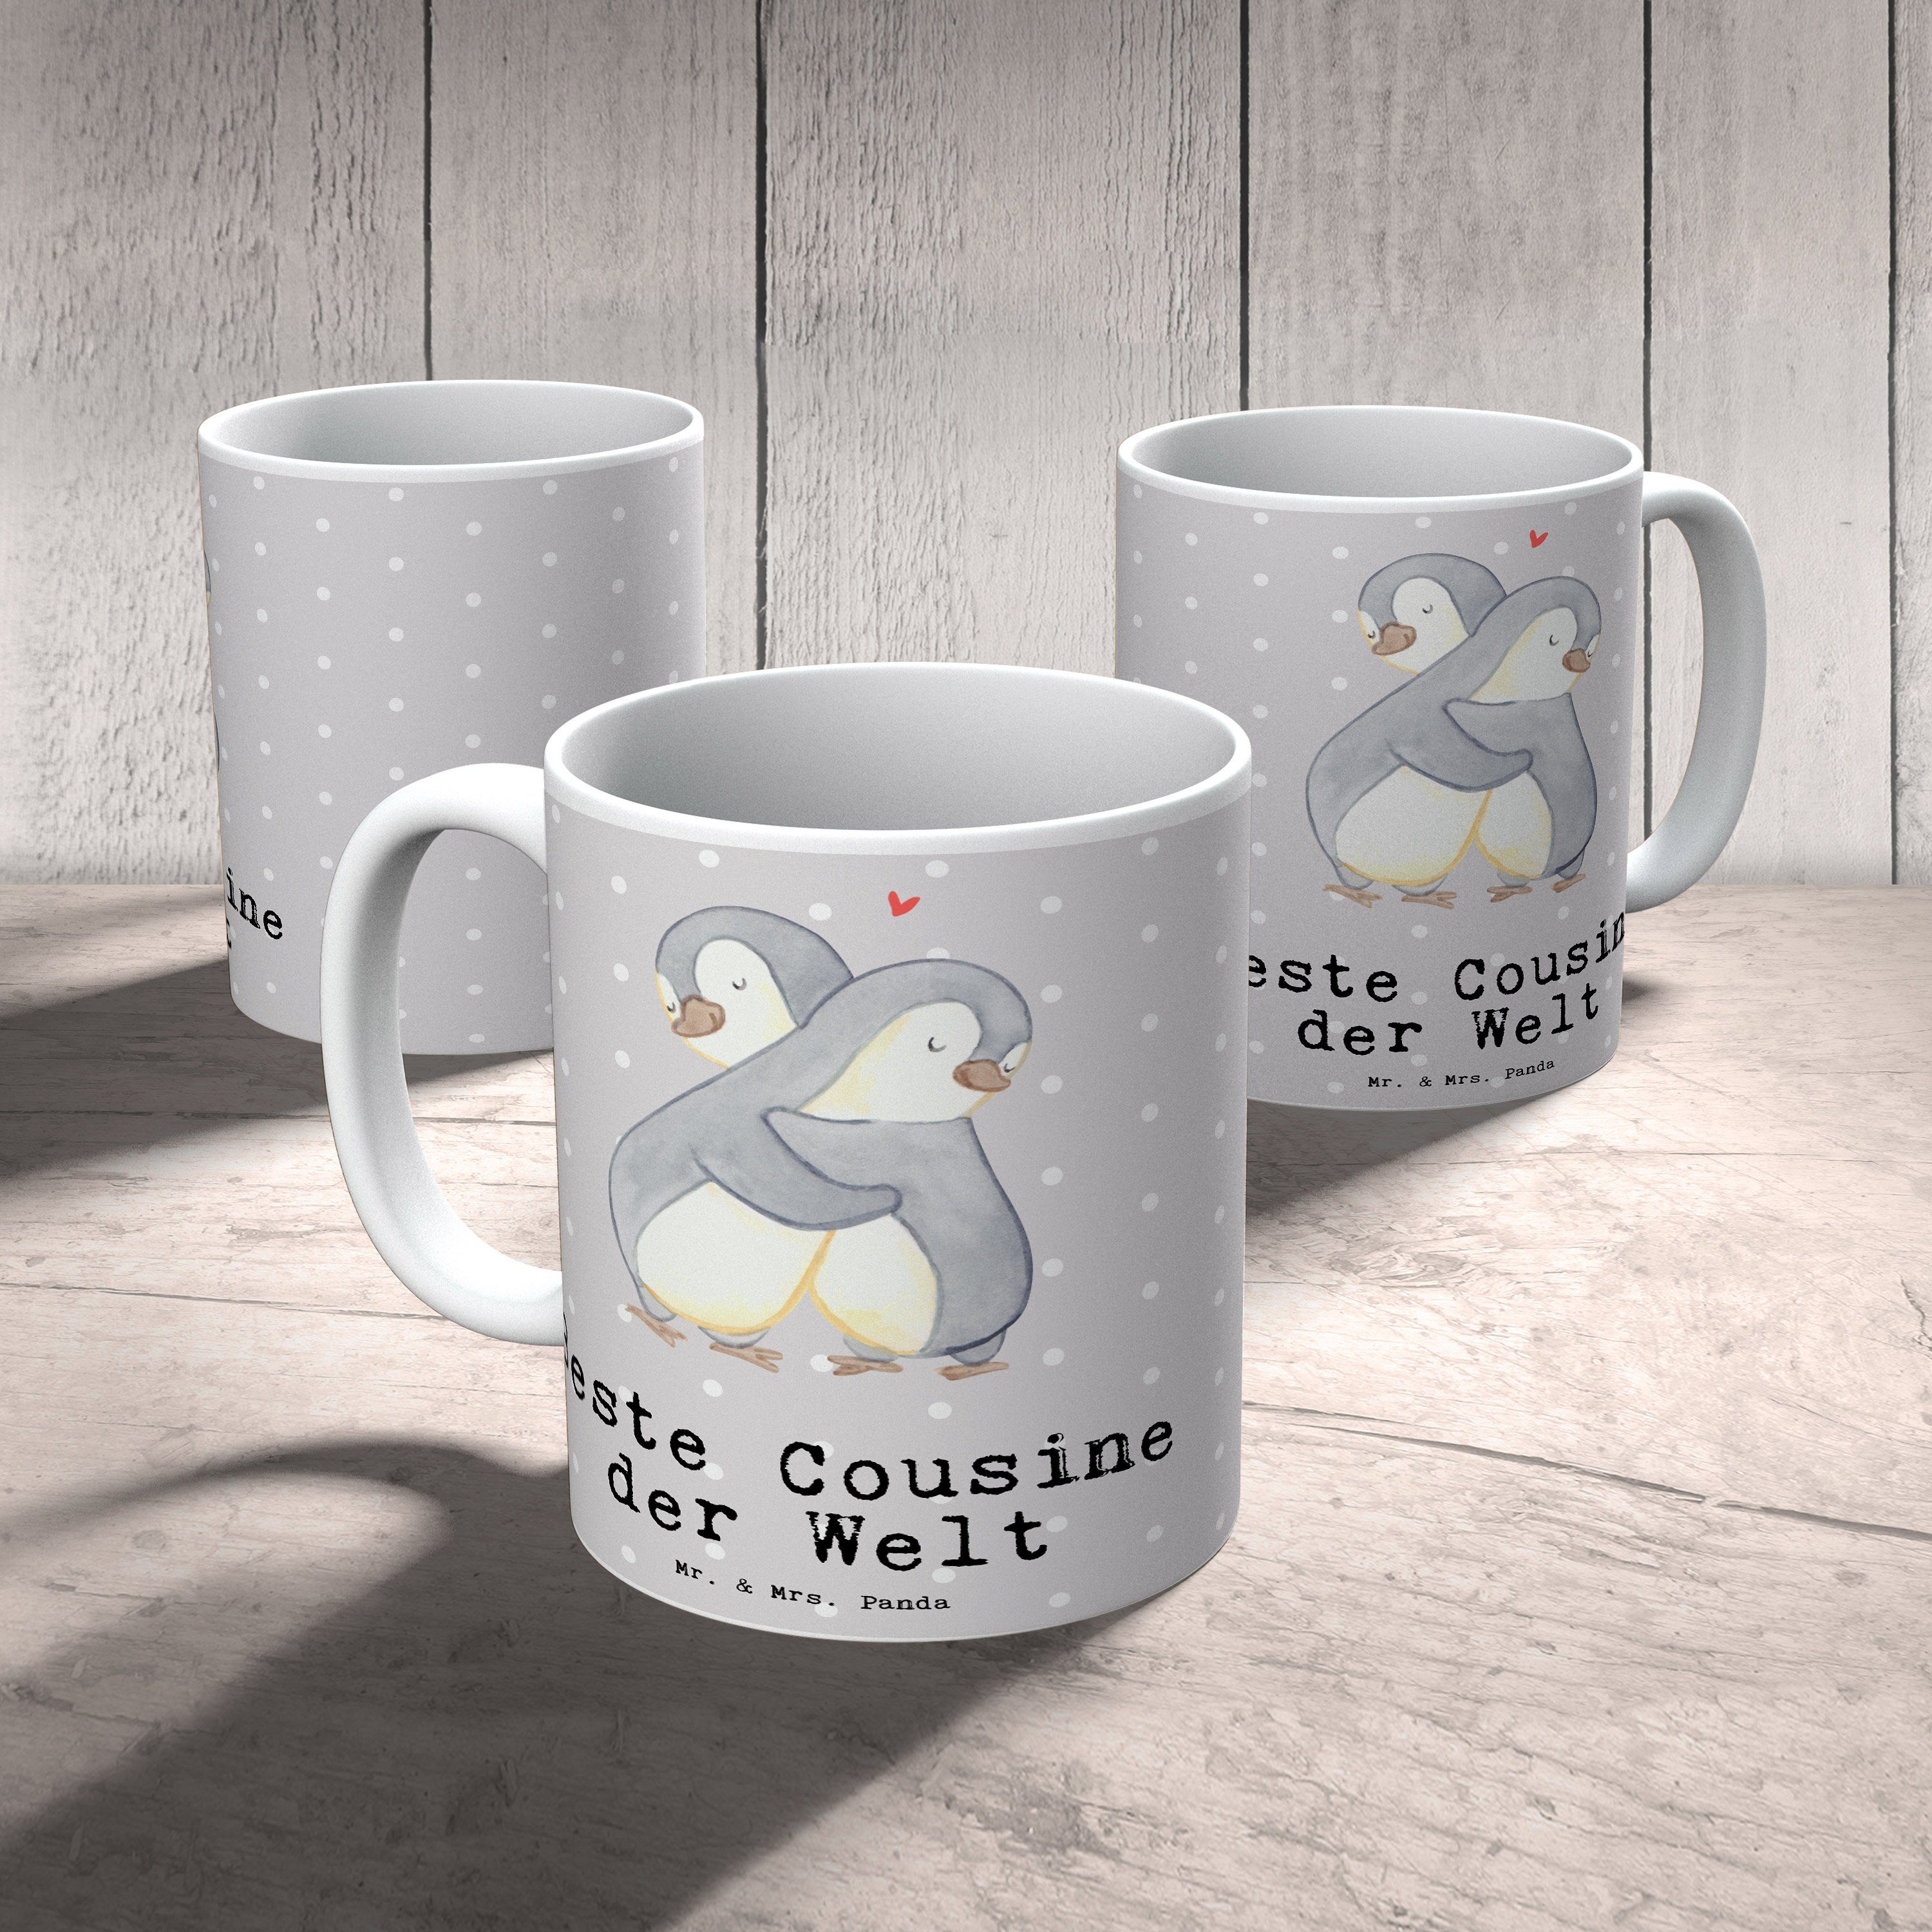 der Mrs. & Tasse, Cousine Mr. Panda Welt Geschenk, Pastell - Beste Sche, Pinguin Grau Tasse Keramik -